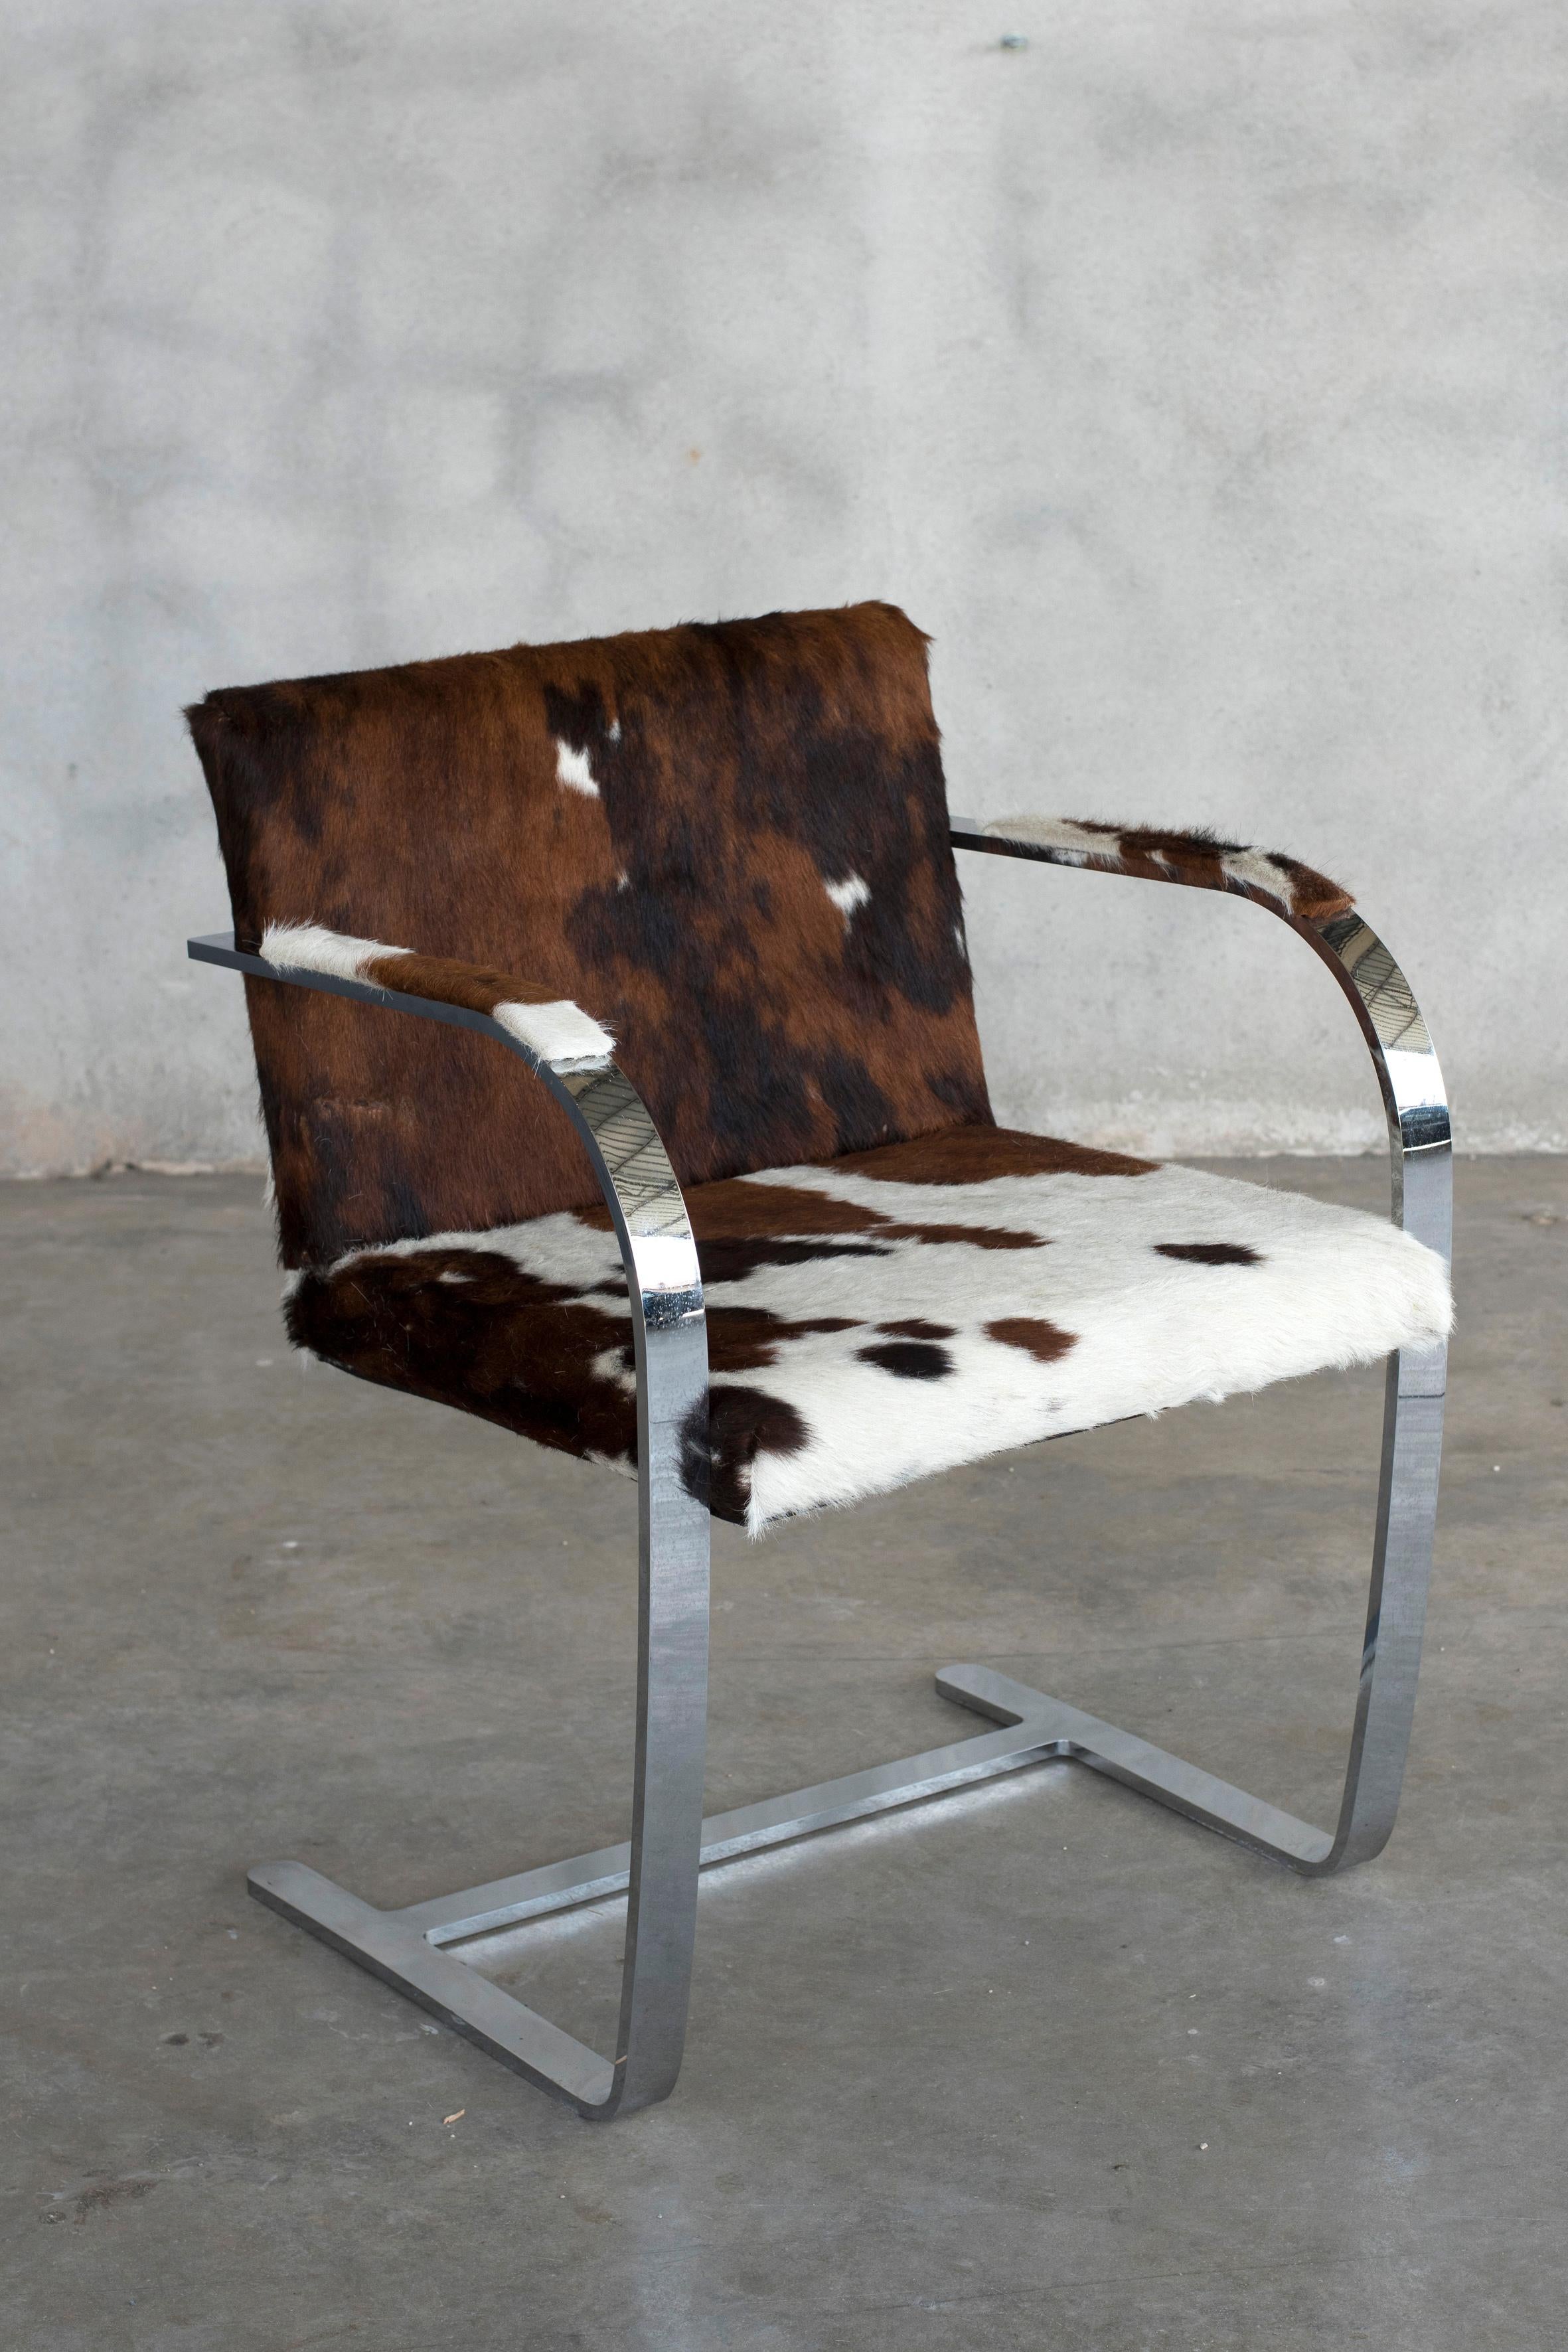 Mies van der Rohe acier chromé Knoll Int. Chaise brno en fourrure de vache. Deux disponibles. Prix par chaise.
Cette chaise a été récemment retapissée en fourrure de vache. Labellisé avec une étiquette de Knoll International 
Taille : L 22,75